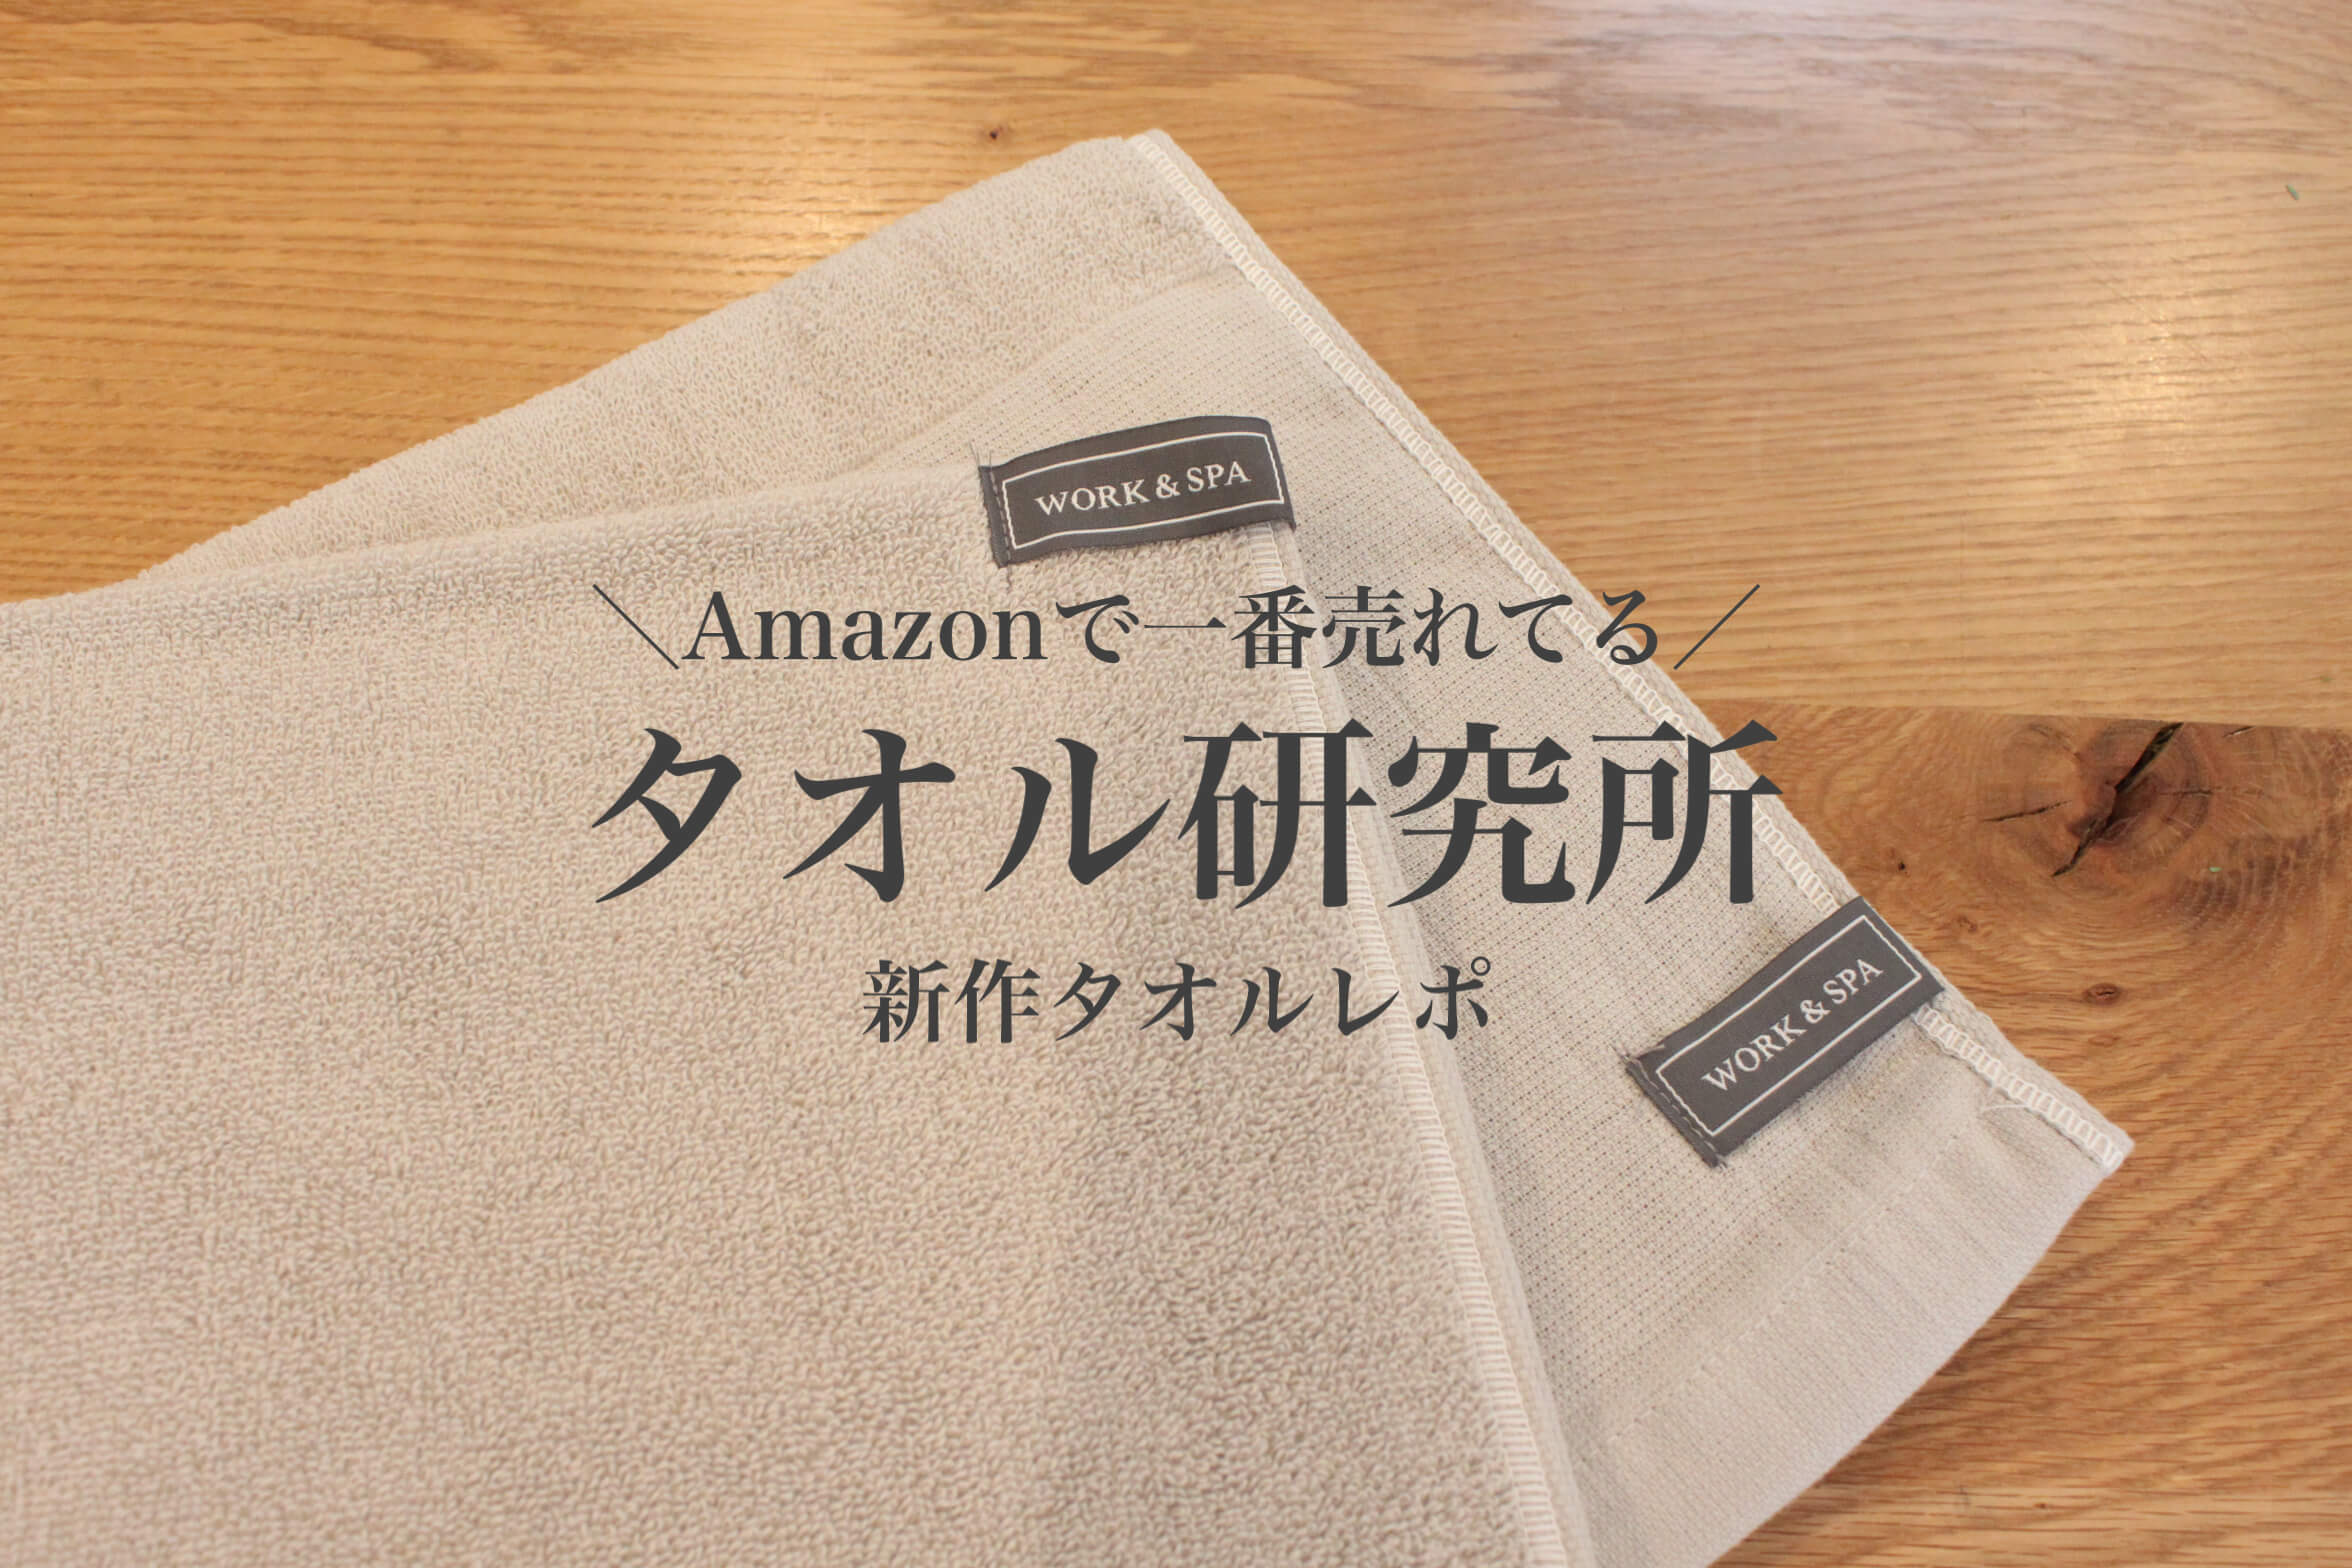 Amazonで一番売れてる 人気の タオル研究所 から薄手タオルが新登場 Work Spa 暮らしの音